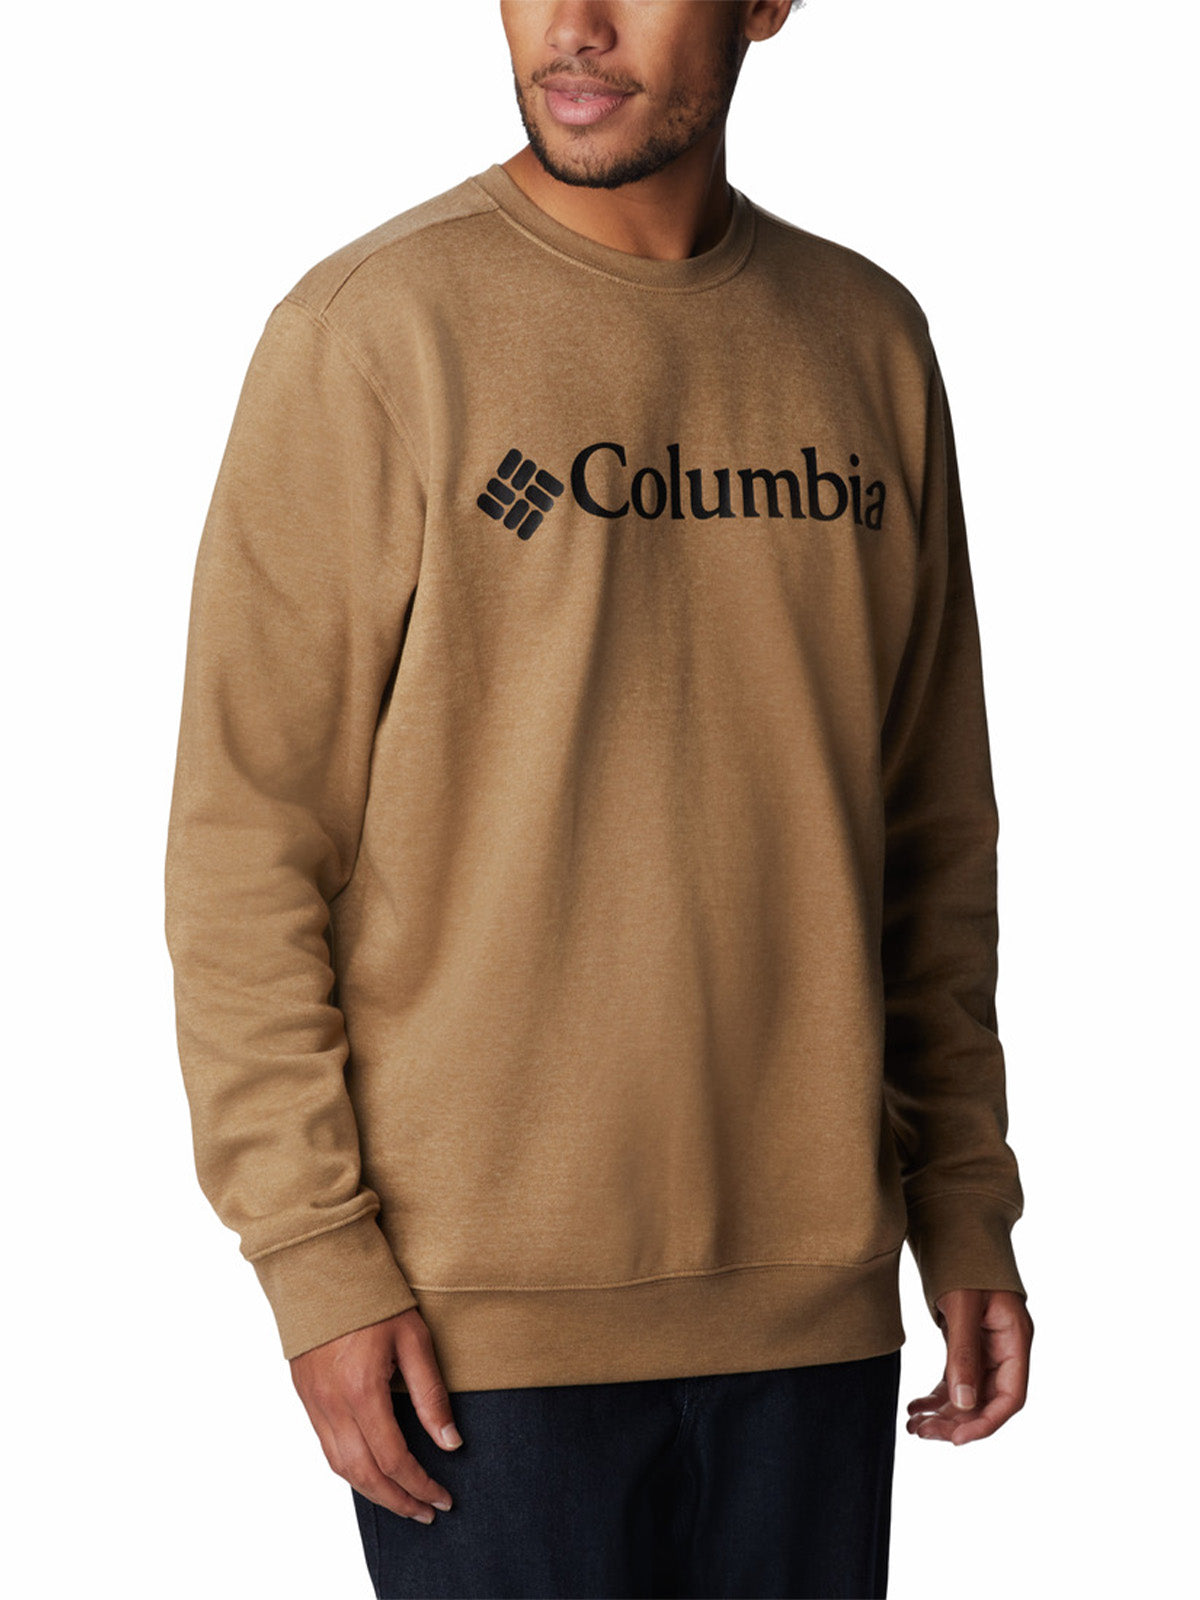 Columbia Trek Crew Sweatshirt for Men